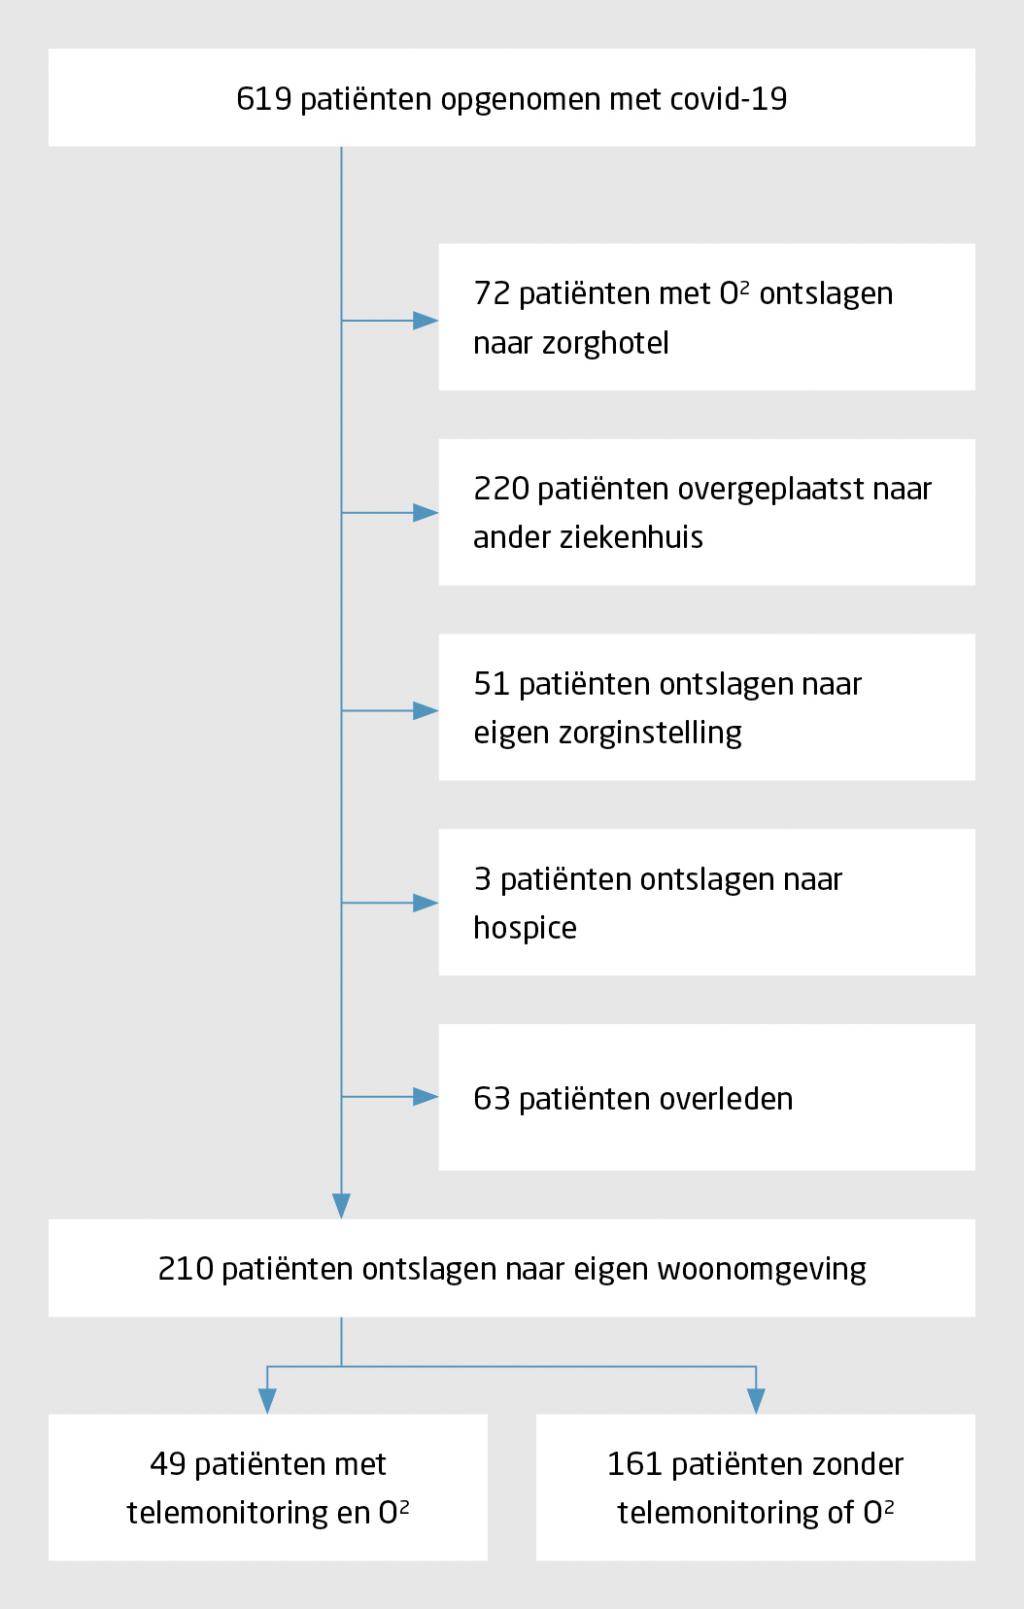 Figuur 2 | Opname, overplaatsing, overlijden en ontslag van patiënten met covid-19 in het Maasstad Ziekenhuis